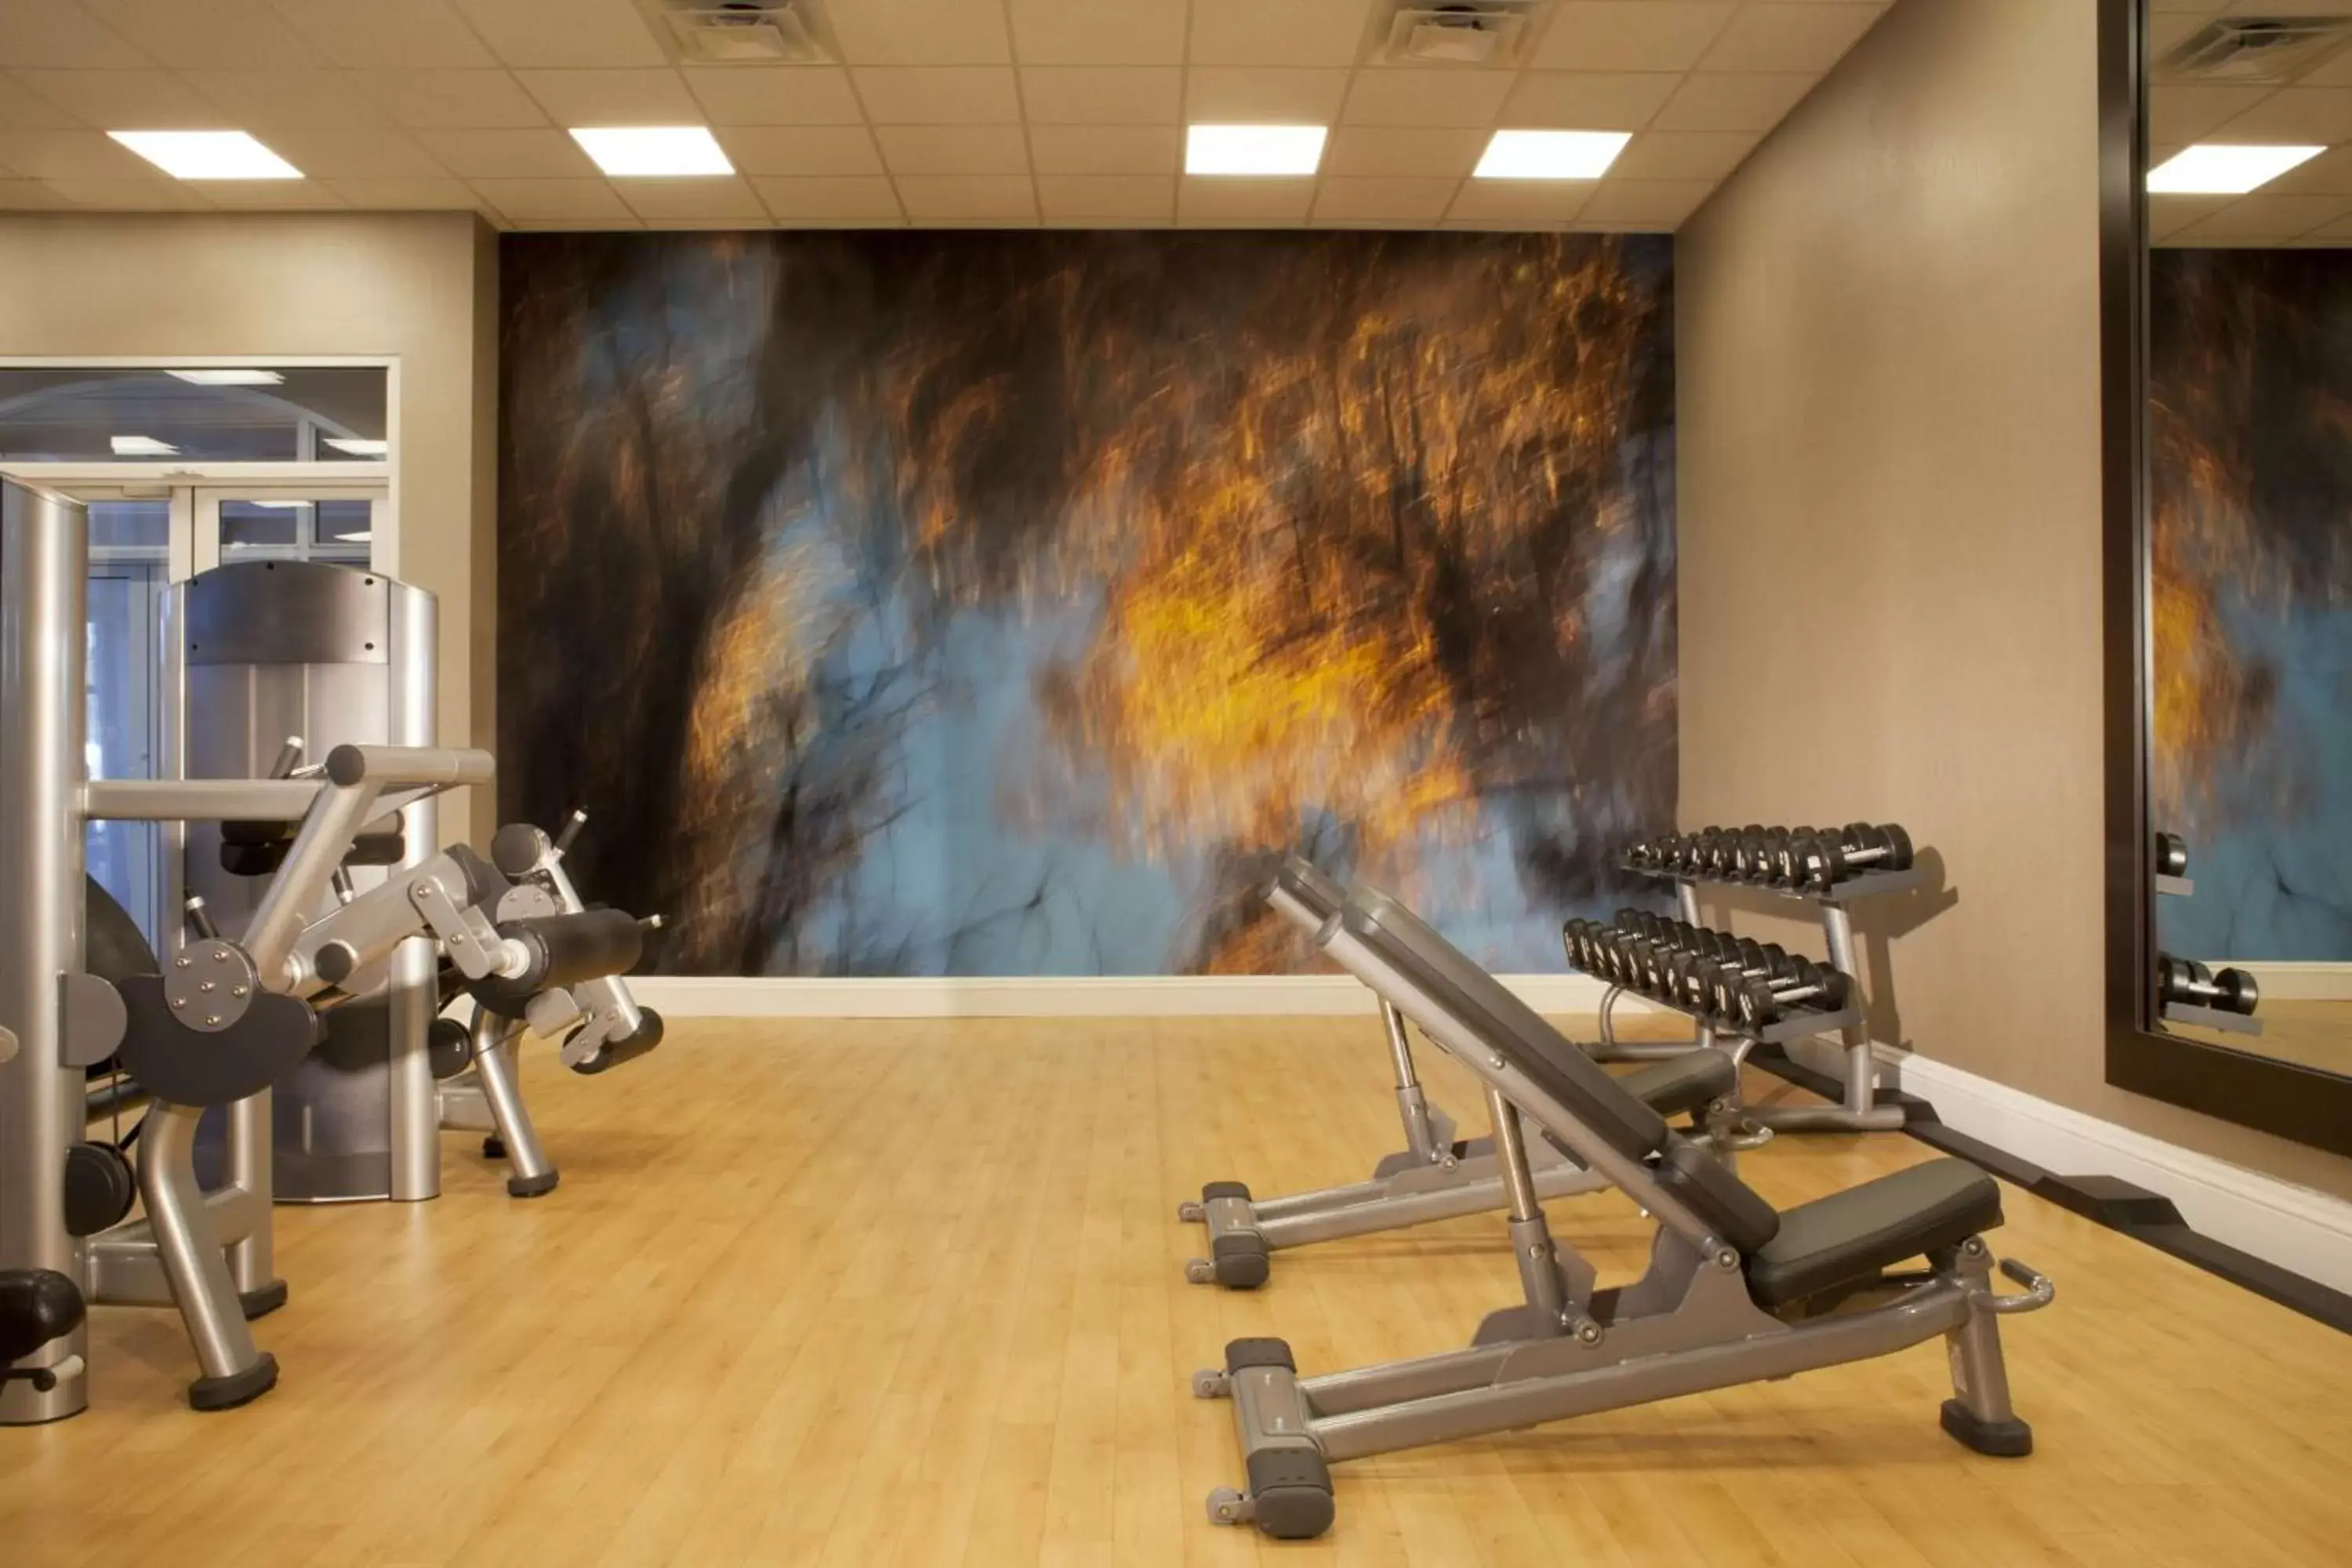 Fitness centre/facilities, Fitness Center/Facilities in Hyatt Regency Long Island